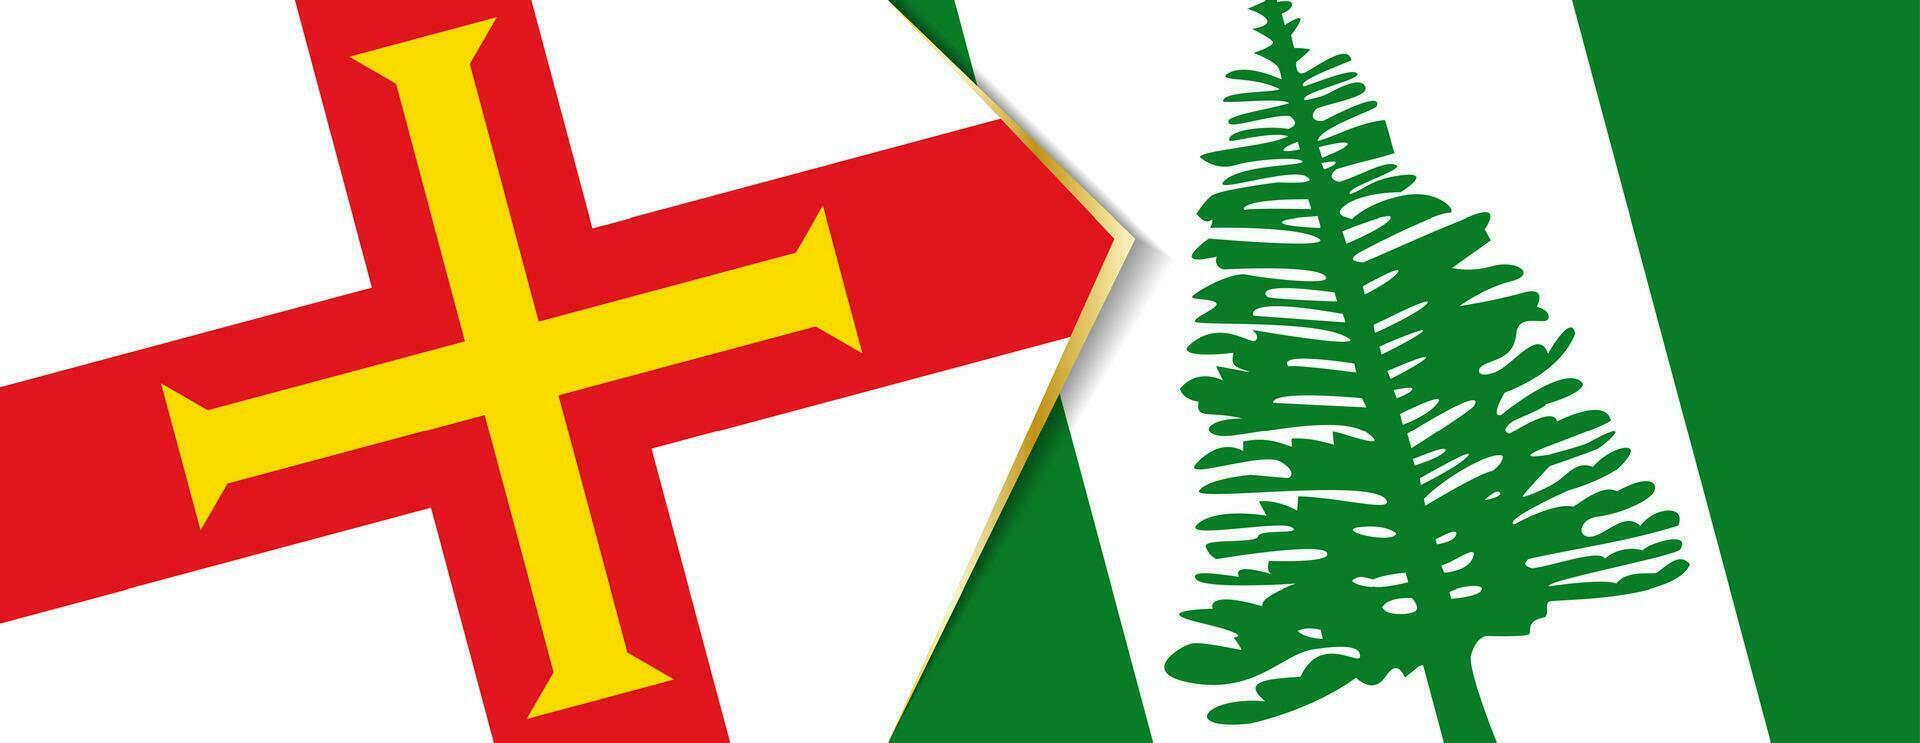 guernsey y norfolk isla banderas, dos vector banderas